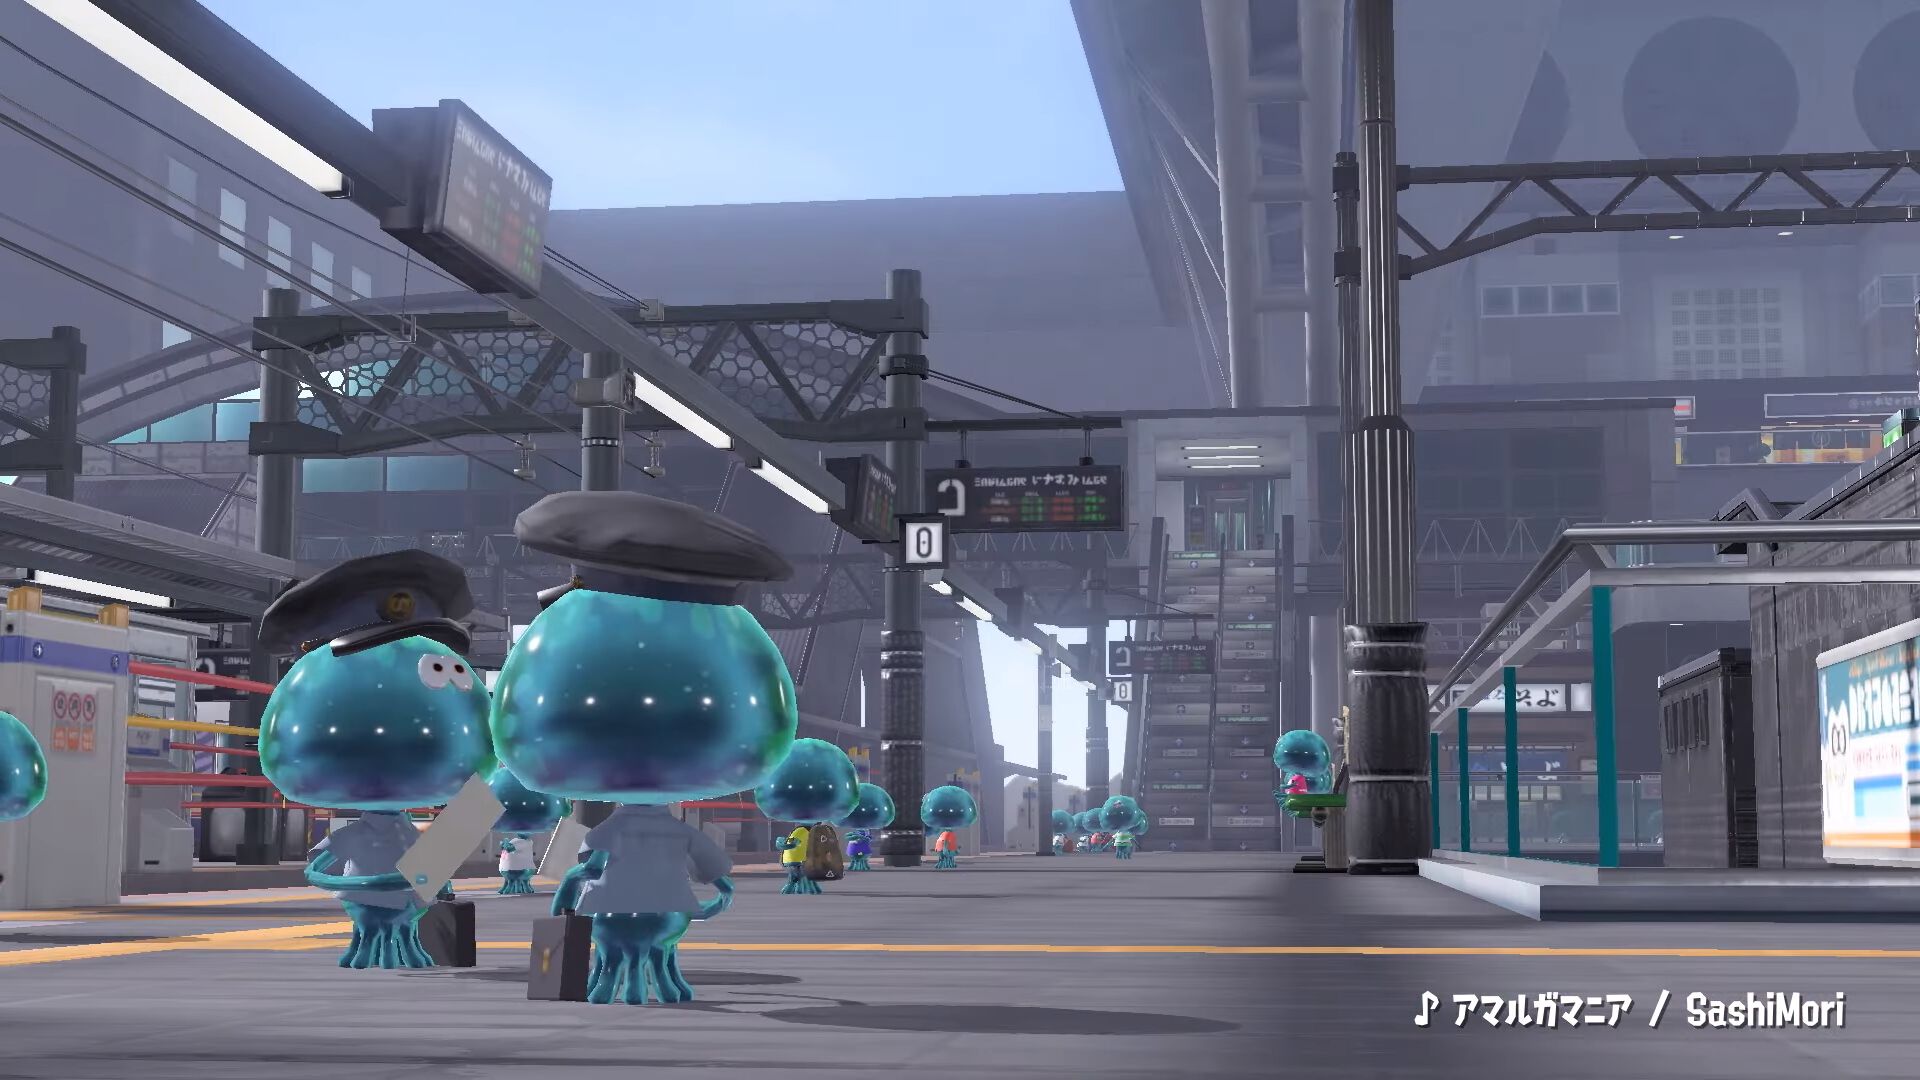 『スプラトゥーン3』新ステージ“リュウグウターミナル”が発表。駅をモデルにしたステージで、ギミックとして移動式の床が登場